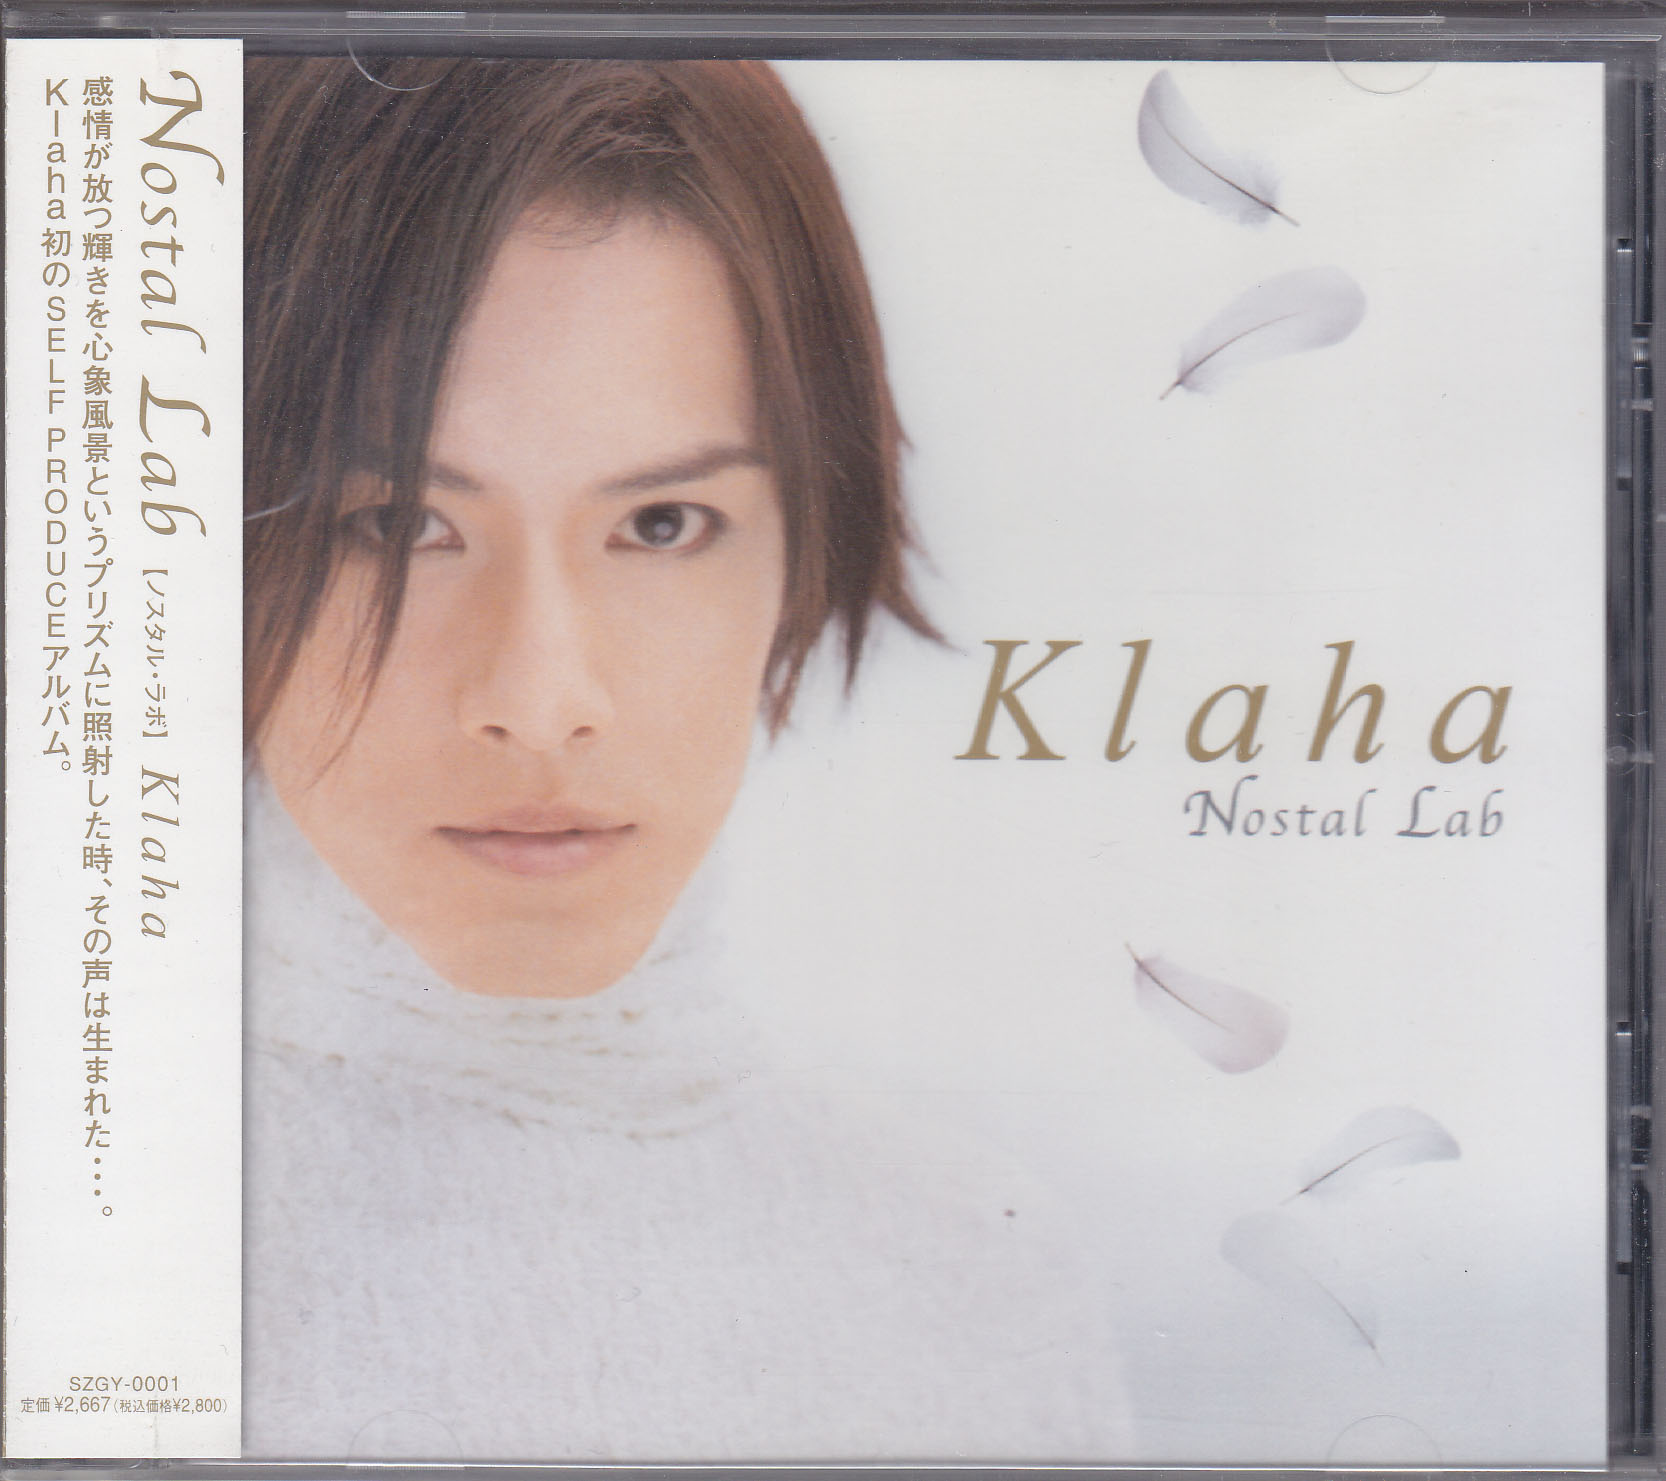 Klaha ( クラハ )  の CD Nostal Lab 通常盤